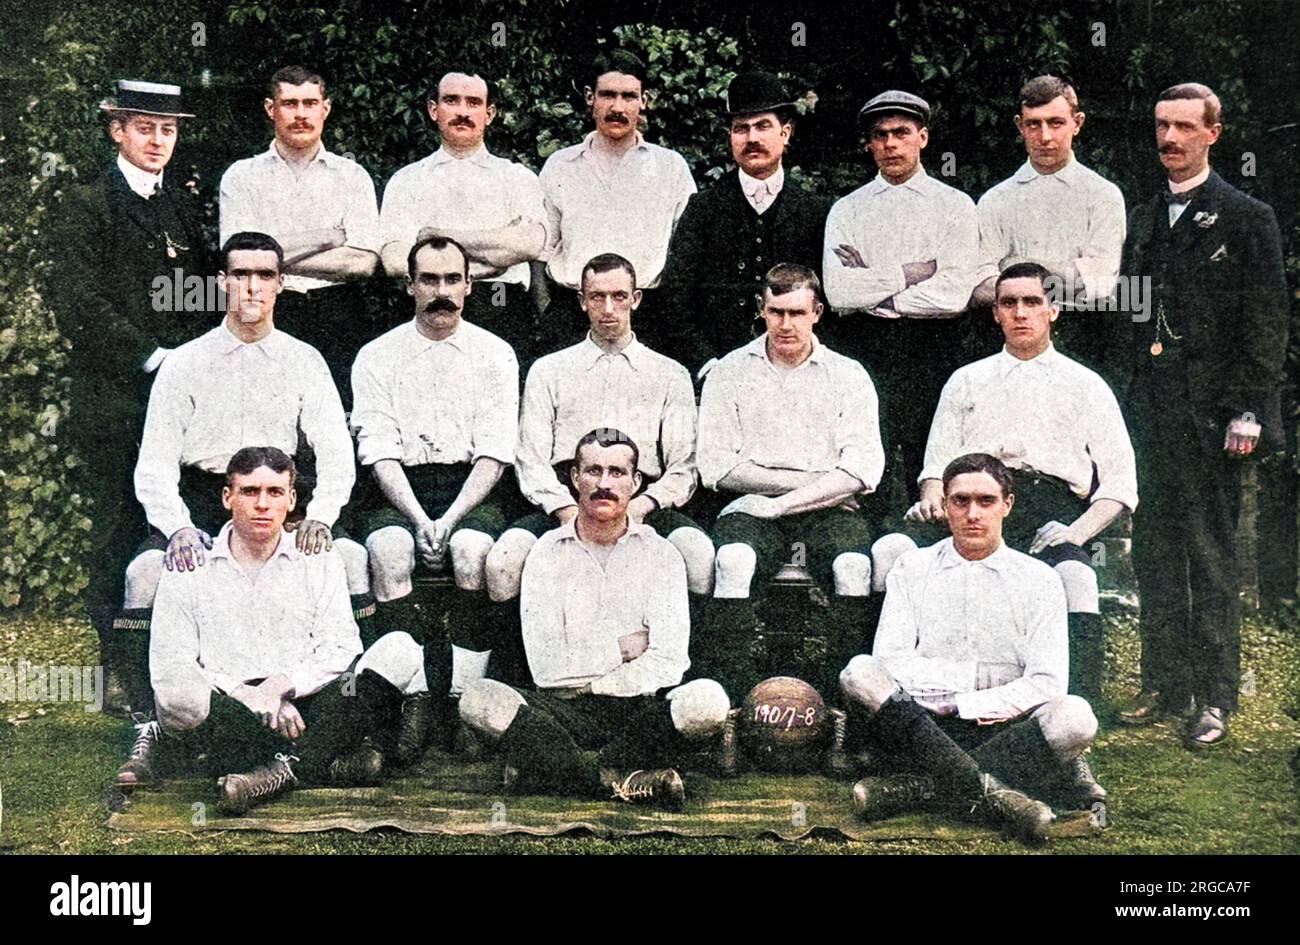 Foto des Fußballteams der Wolverhampton Wanderers in der Saison 1907-1908. Die abgebildeten Spieler sind: Hintere Reihe, von links nach rechts: W. Shepherd (Regisseur), W. Wooldridge (Kapitän), J. Jones, K. Hunt, J. Addinbroke Lee (Sekretär), T. Lunn, Harrison, A.J. Evans (Vorsitzender). Mittlere Reihe, von links nach rechts: Ward, Hedley, J.H. Jones, Radford, Pedley. Erste Reihe, von links nach rechts: Bishop, Collins, Shelton. Stockfoto